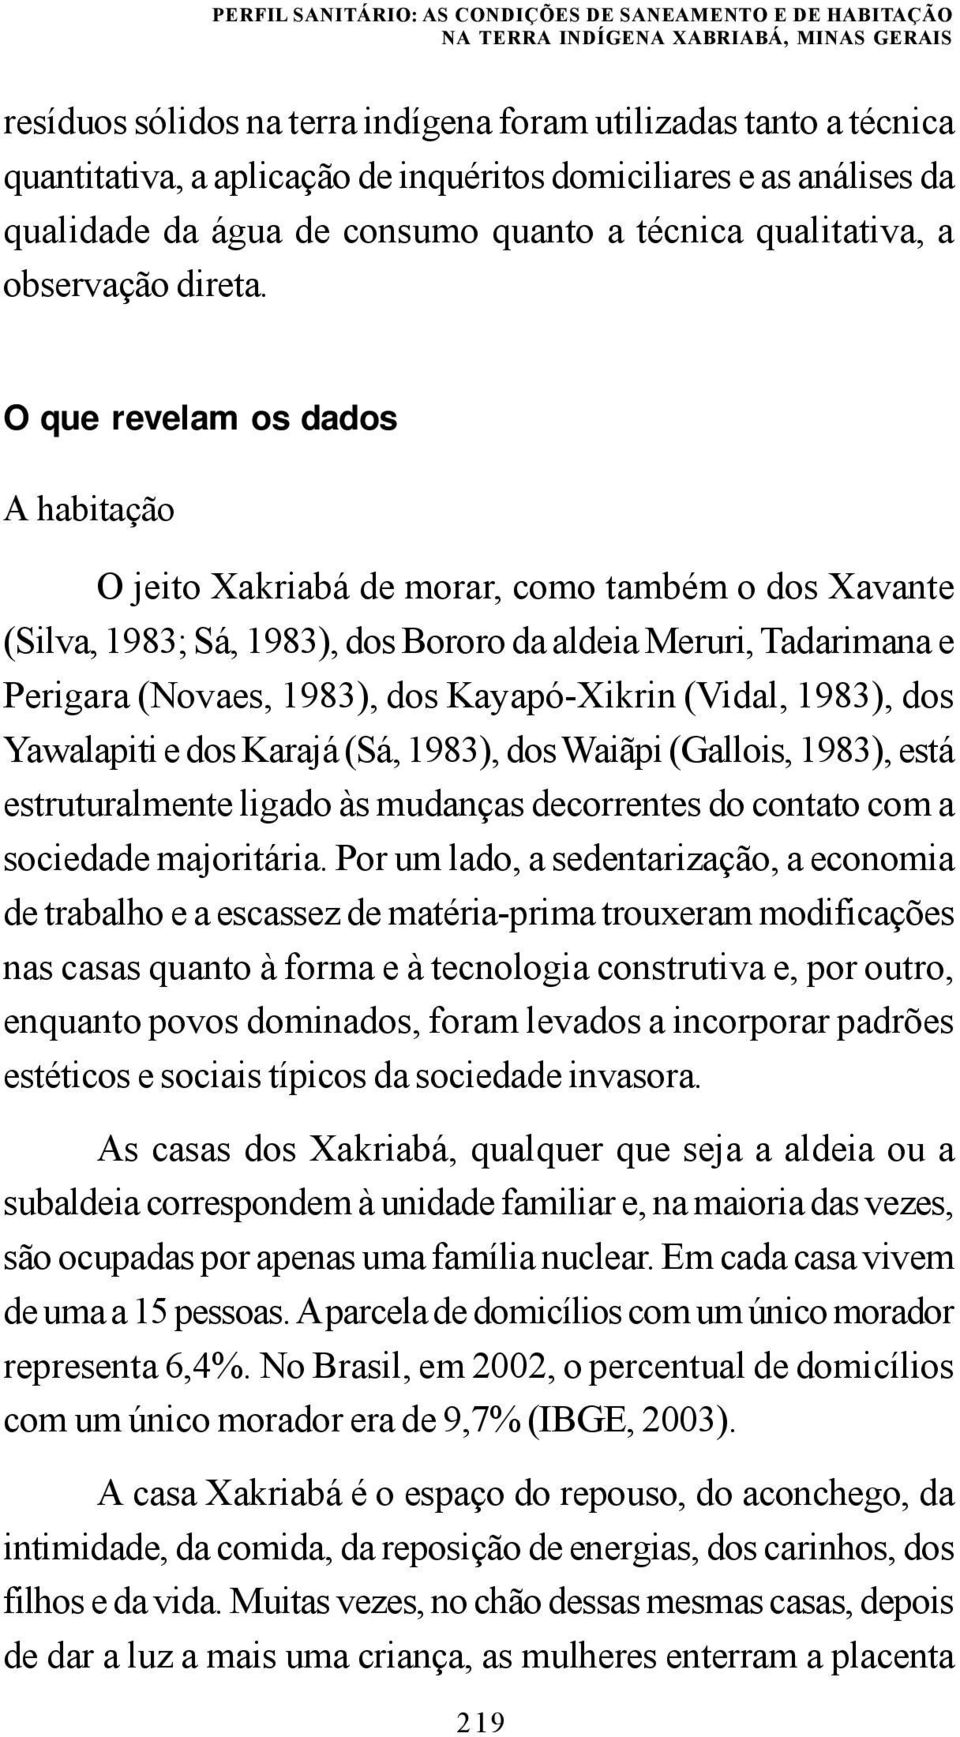 O que revelam os dados A habitação O jeito Xakriabá de morar, como também o dos Xavante (Silva, 1983; Sá, 1983), dos Bororo da aldeia Meruri, Tadarimana e Perigara (Novaes, 1983), dos Kayapó-Xikrin